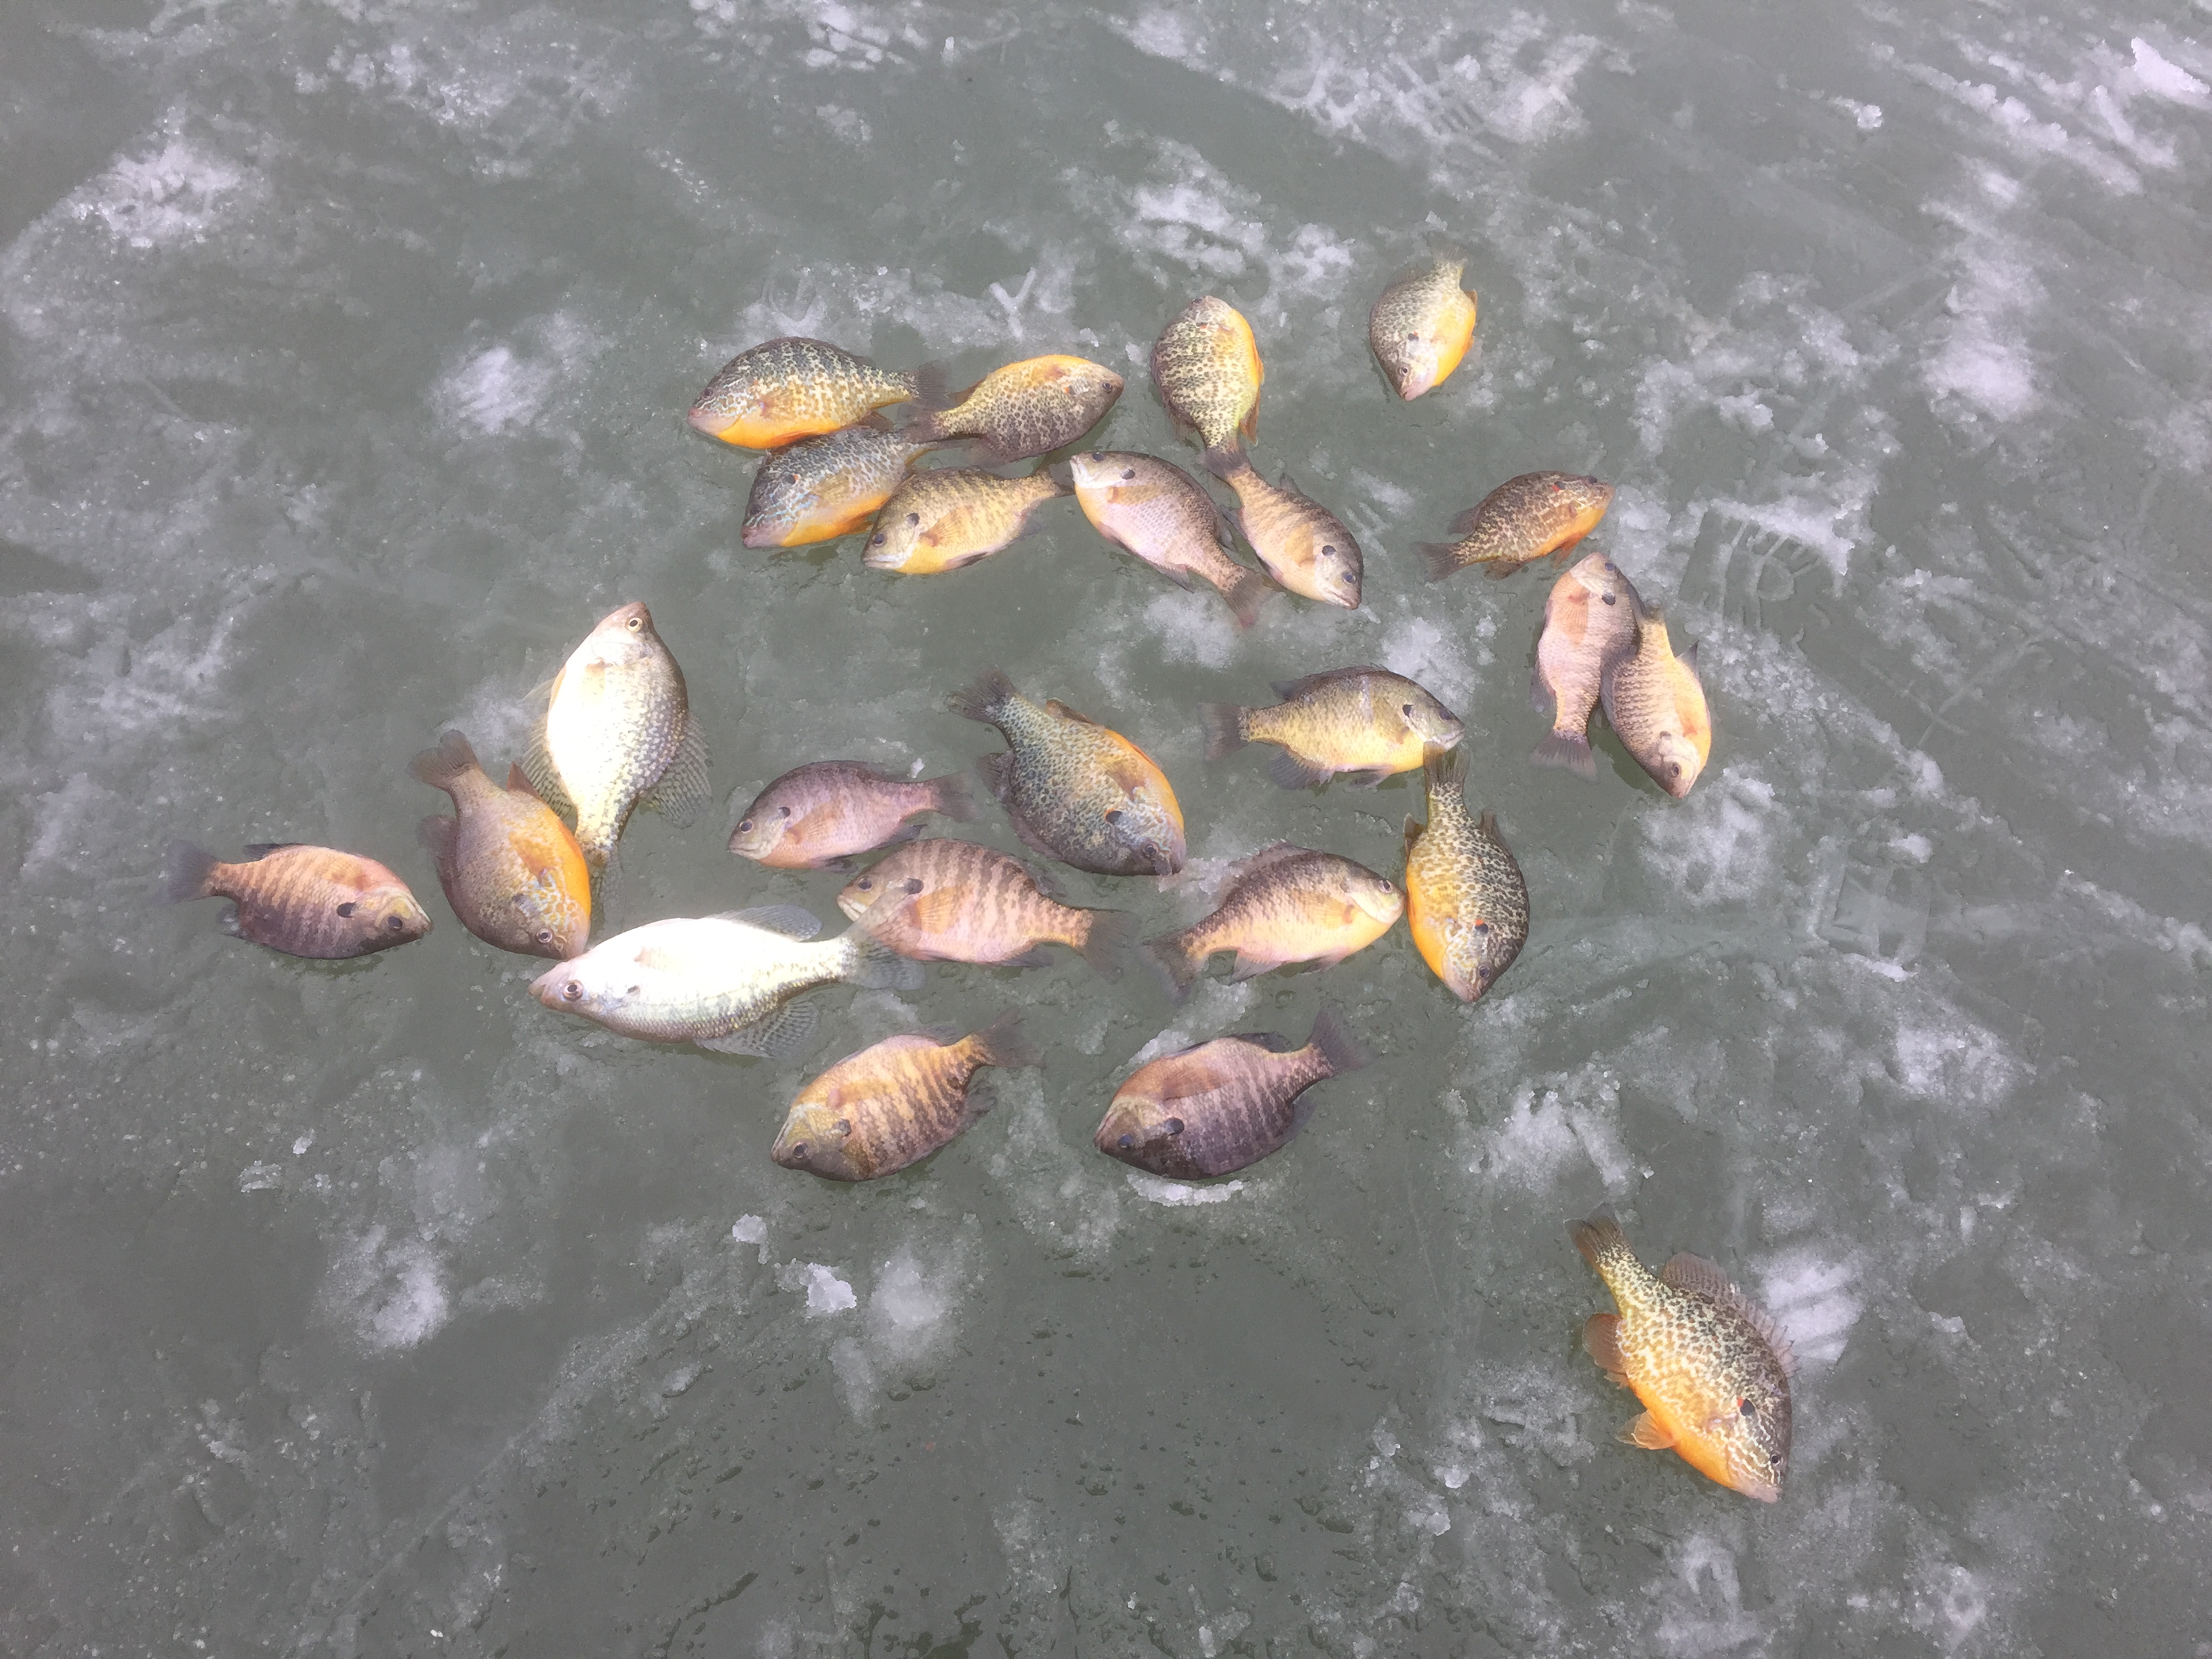 2015 01 06 ice fishing jeremy ohio fish on ice